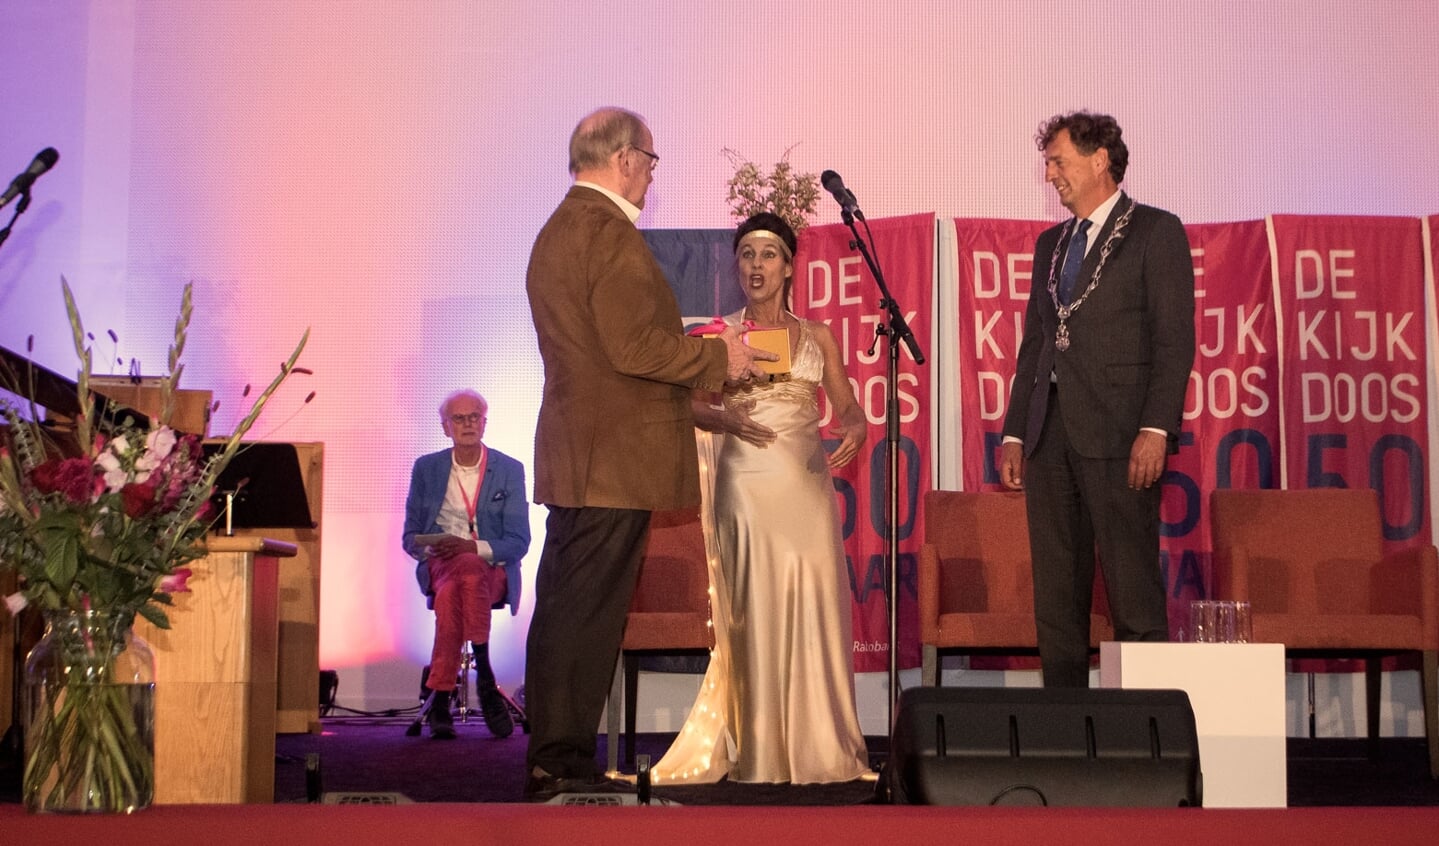 Burgemeester Verhulst krijgt een gouden doos aangereikt, met daarin het nieuwe Jubileumboek van De Kijkdoos